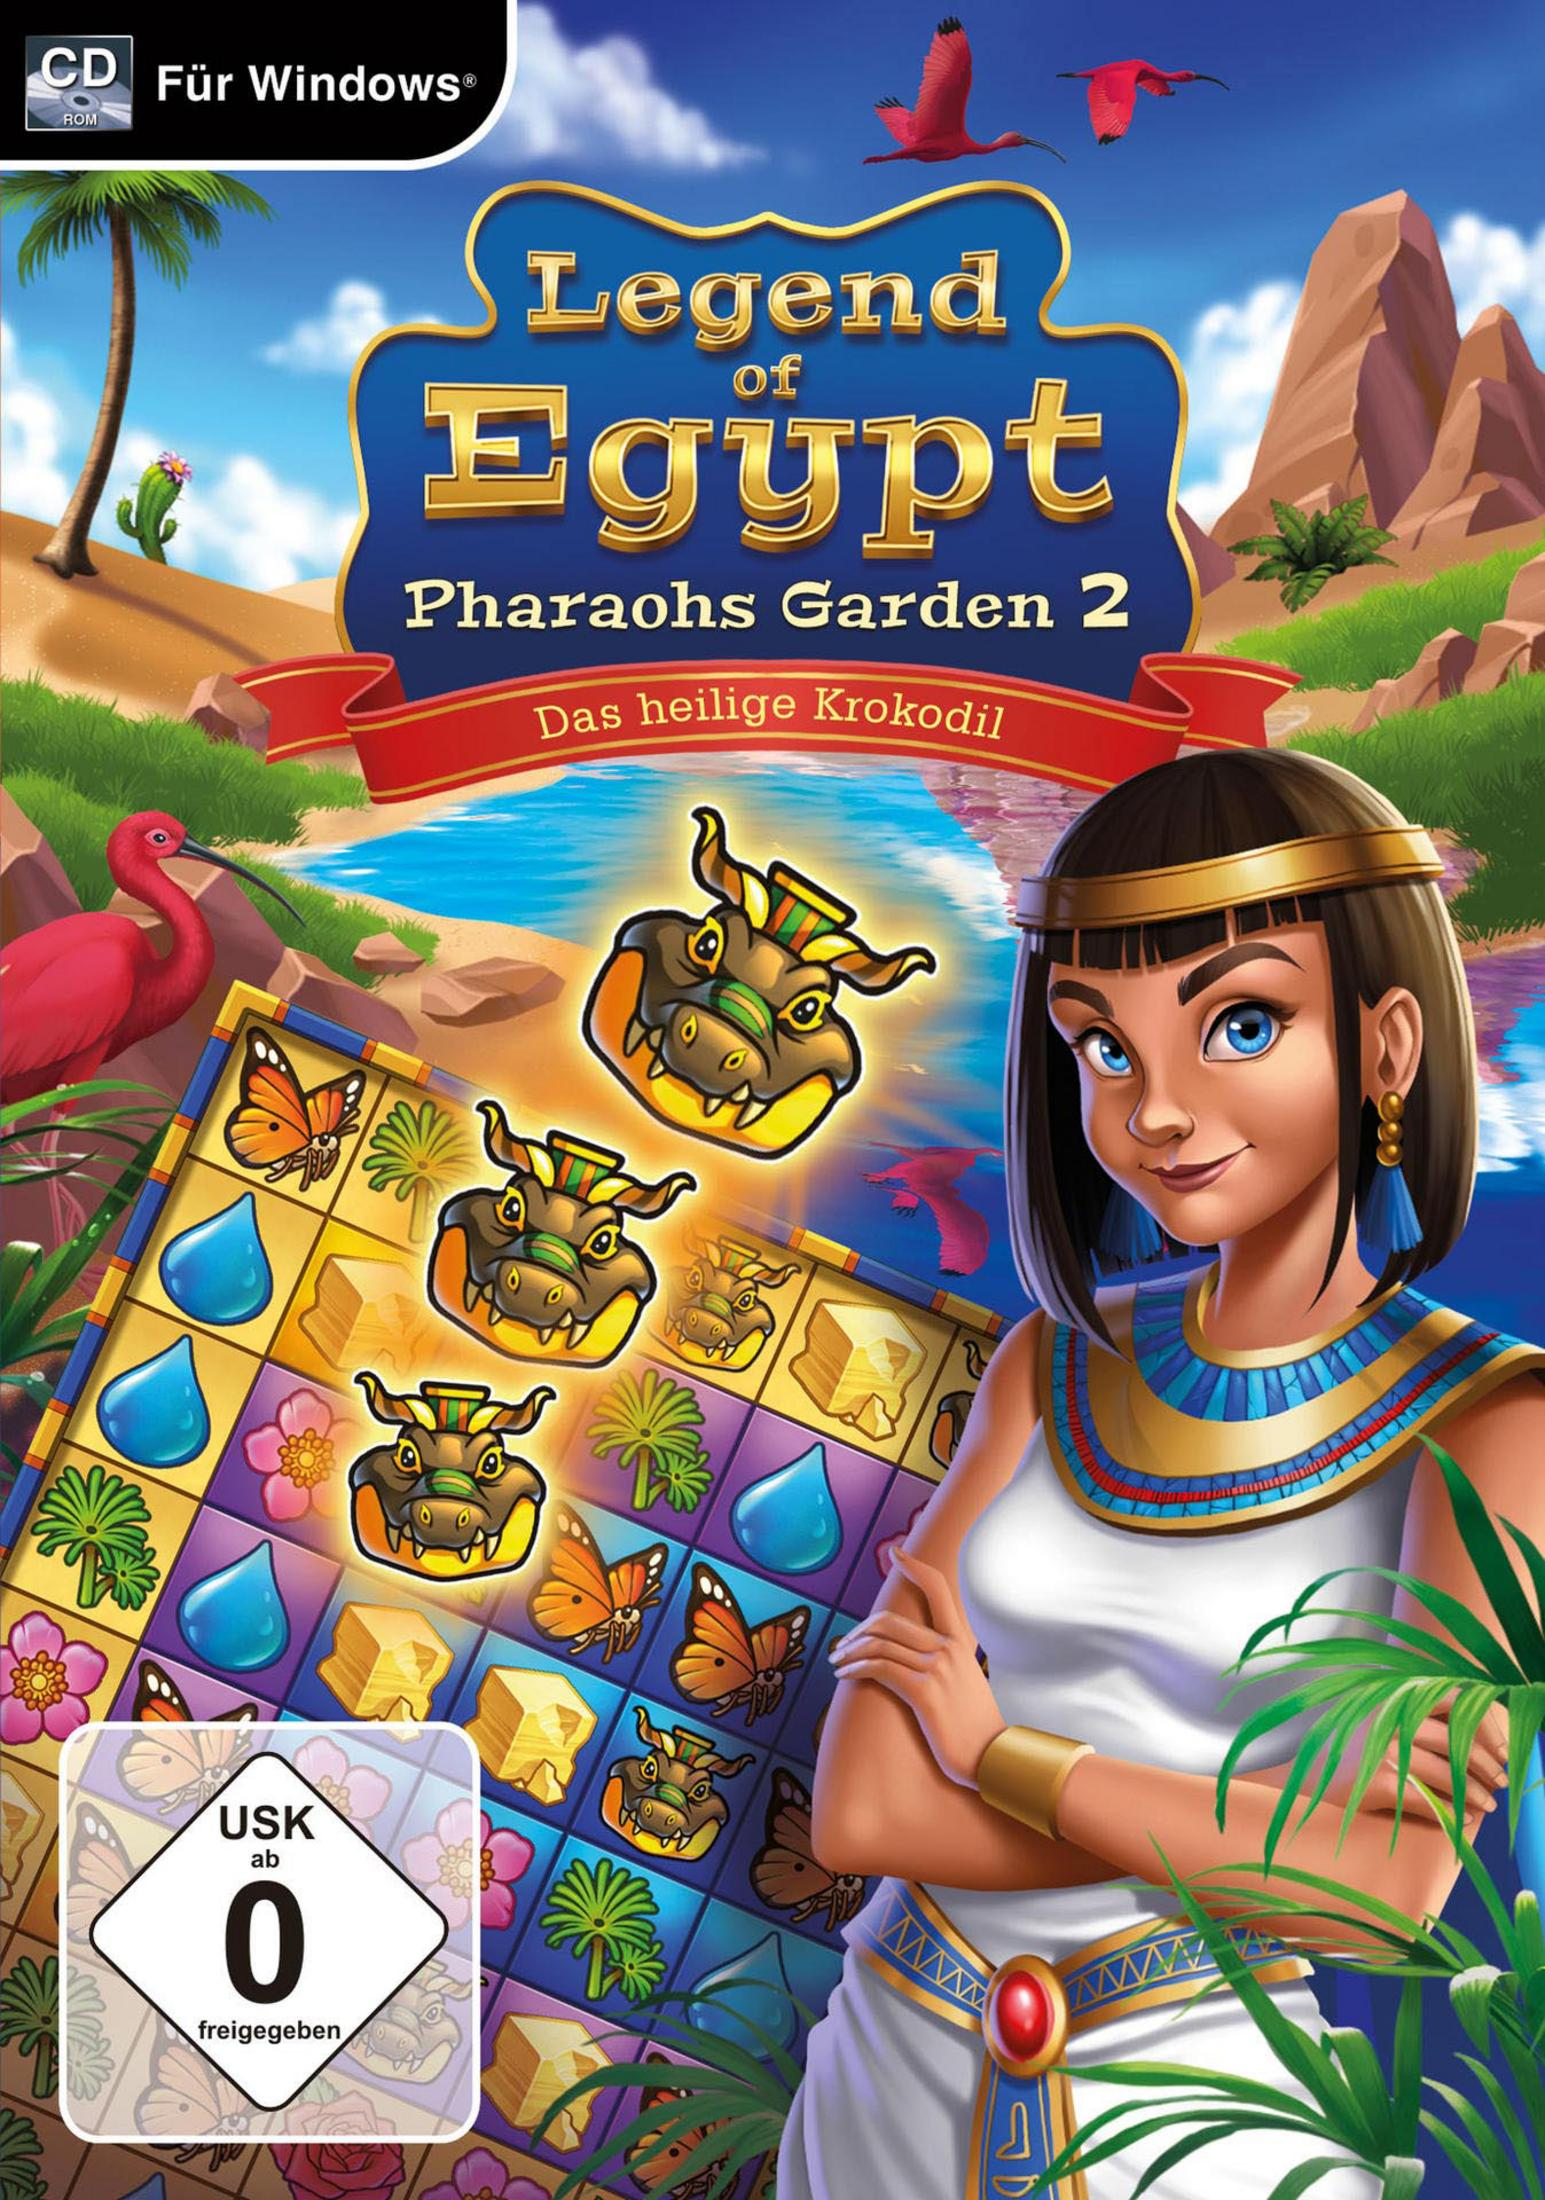 [PC] K. - 2 OF DAS HEILIGE EGYPT LEGEND PHARAOHS GARDEN